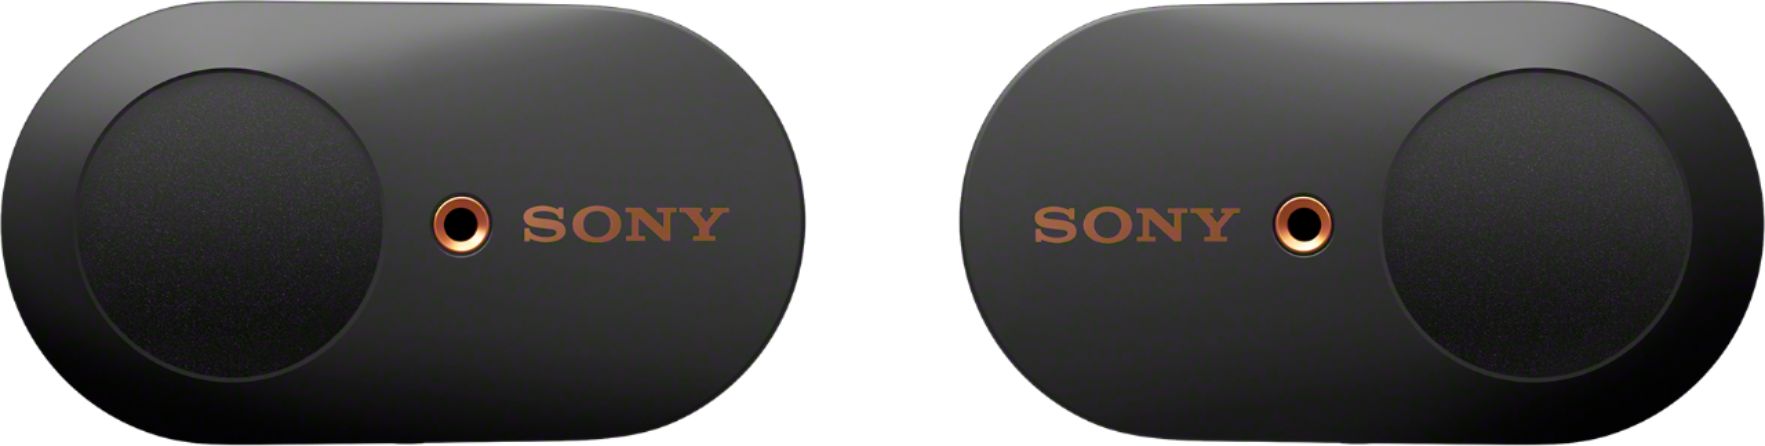 Sony WF-1000XM3 True Wireless Noise Cancelling In-Ear Headphones Black  WF1000XM3⁄B - Best Buy